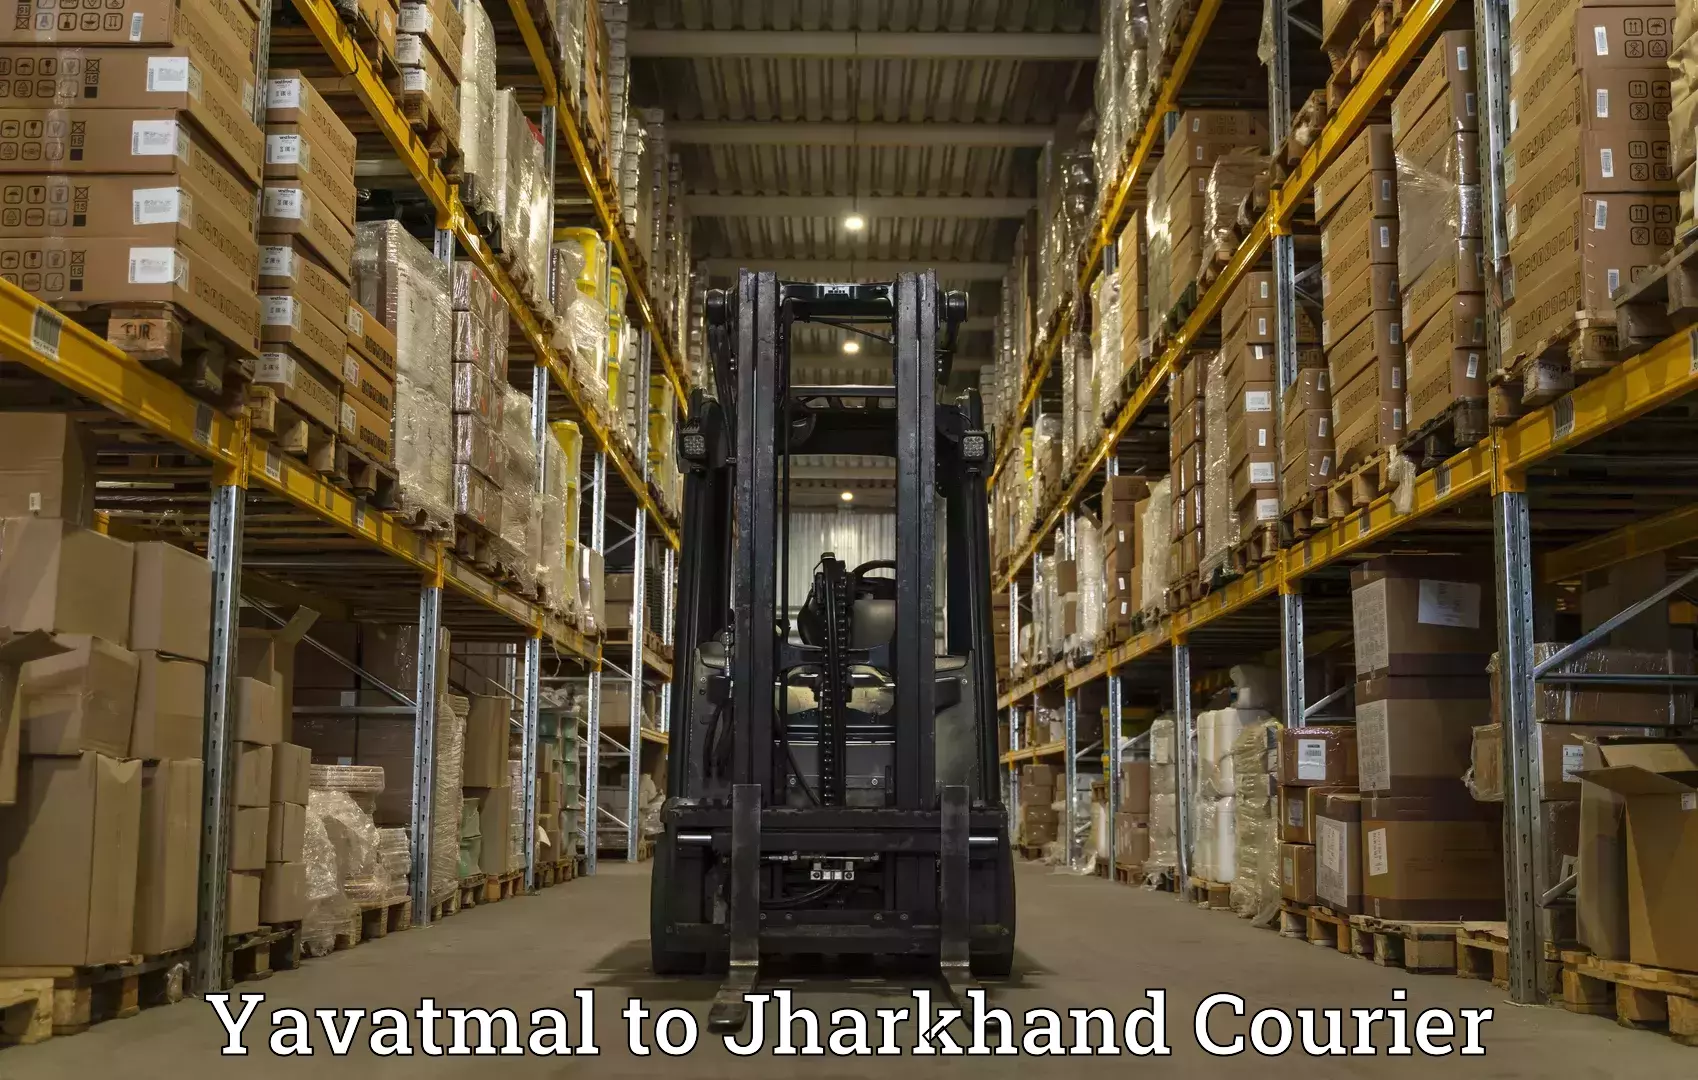 Smart shipping technology Yavatmal to Chandwa